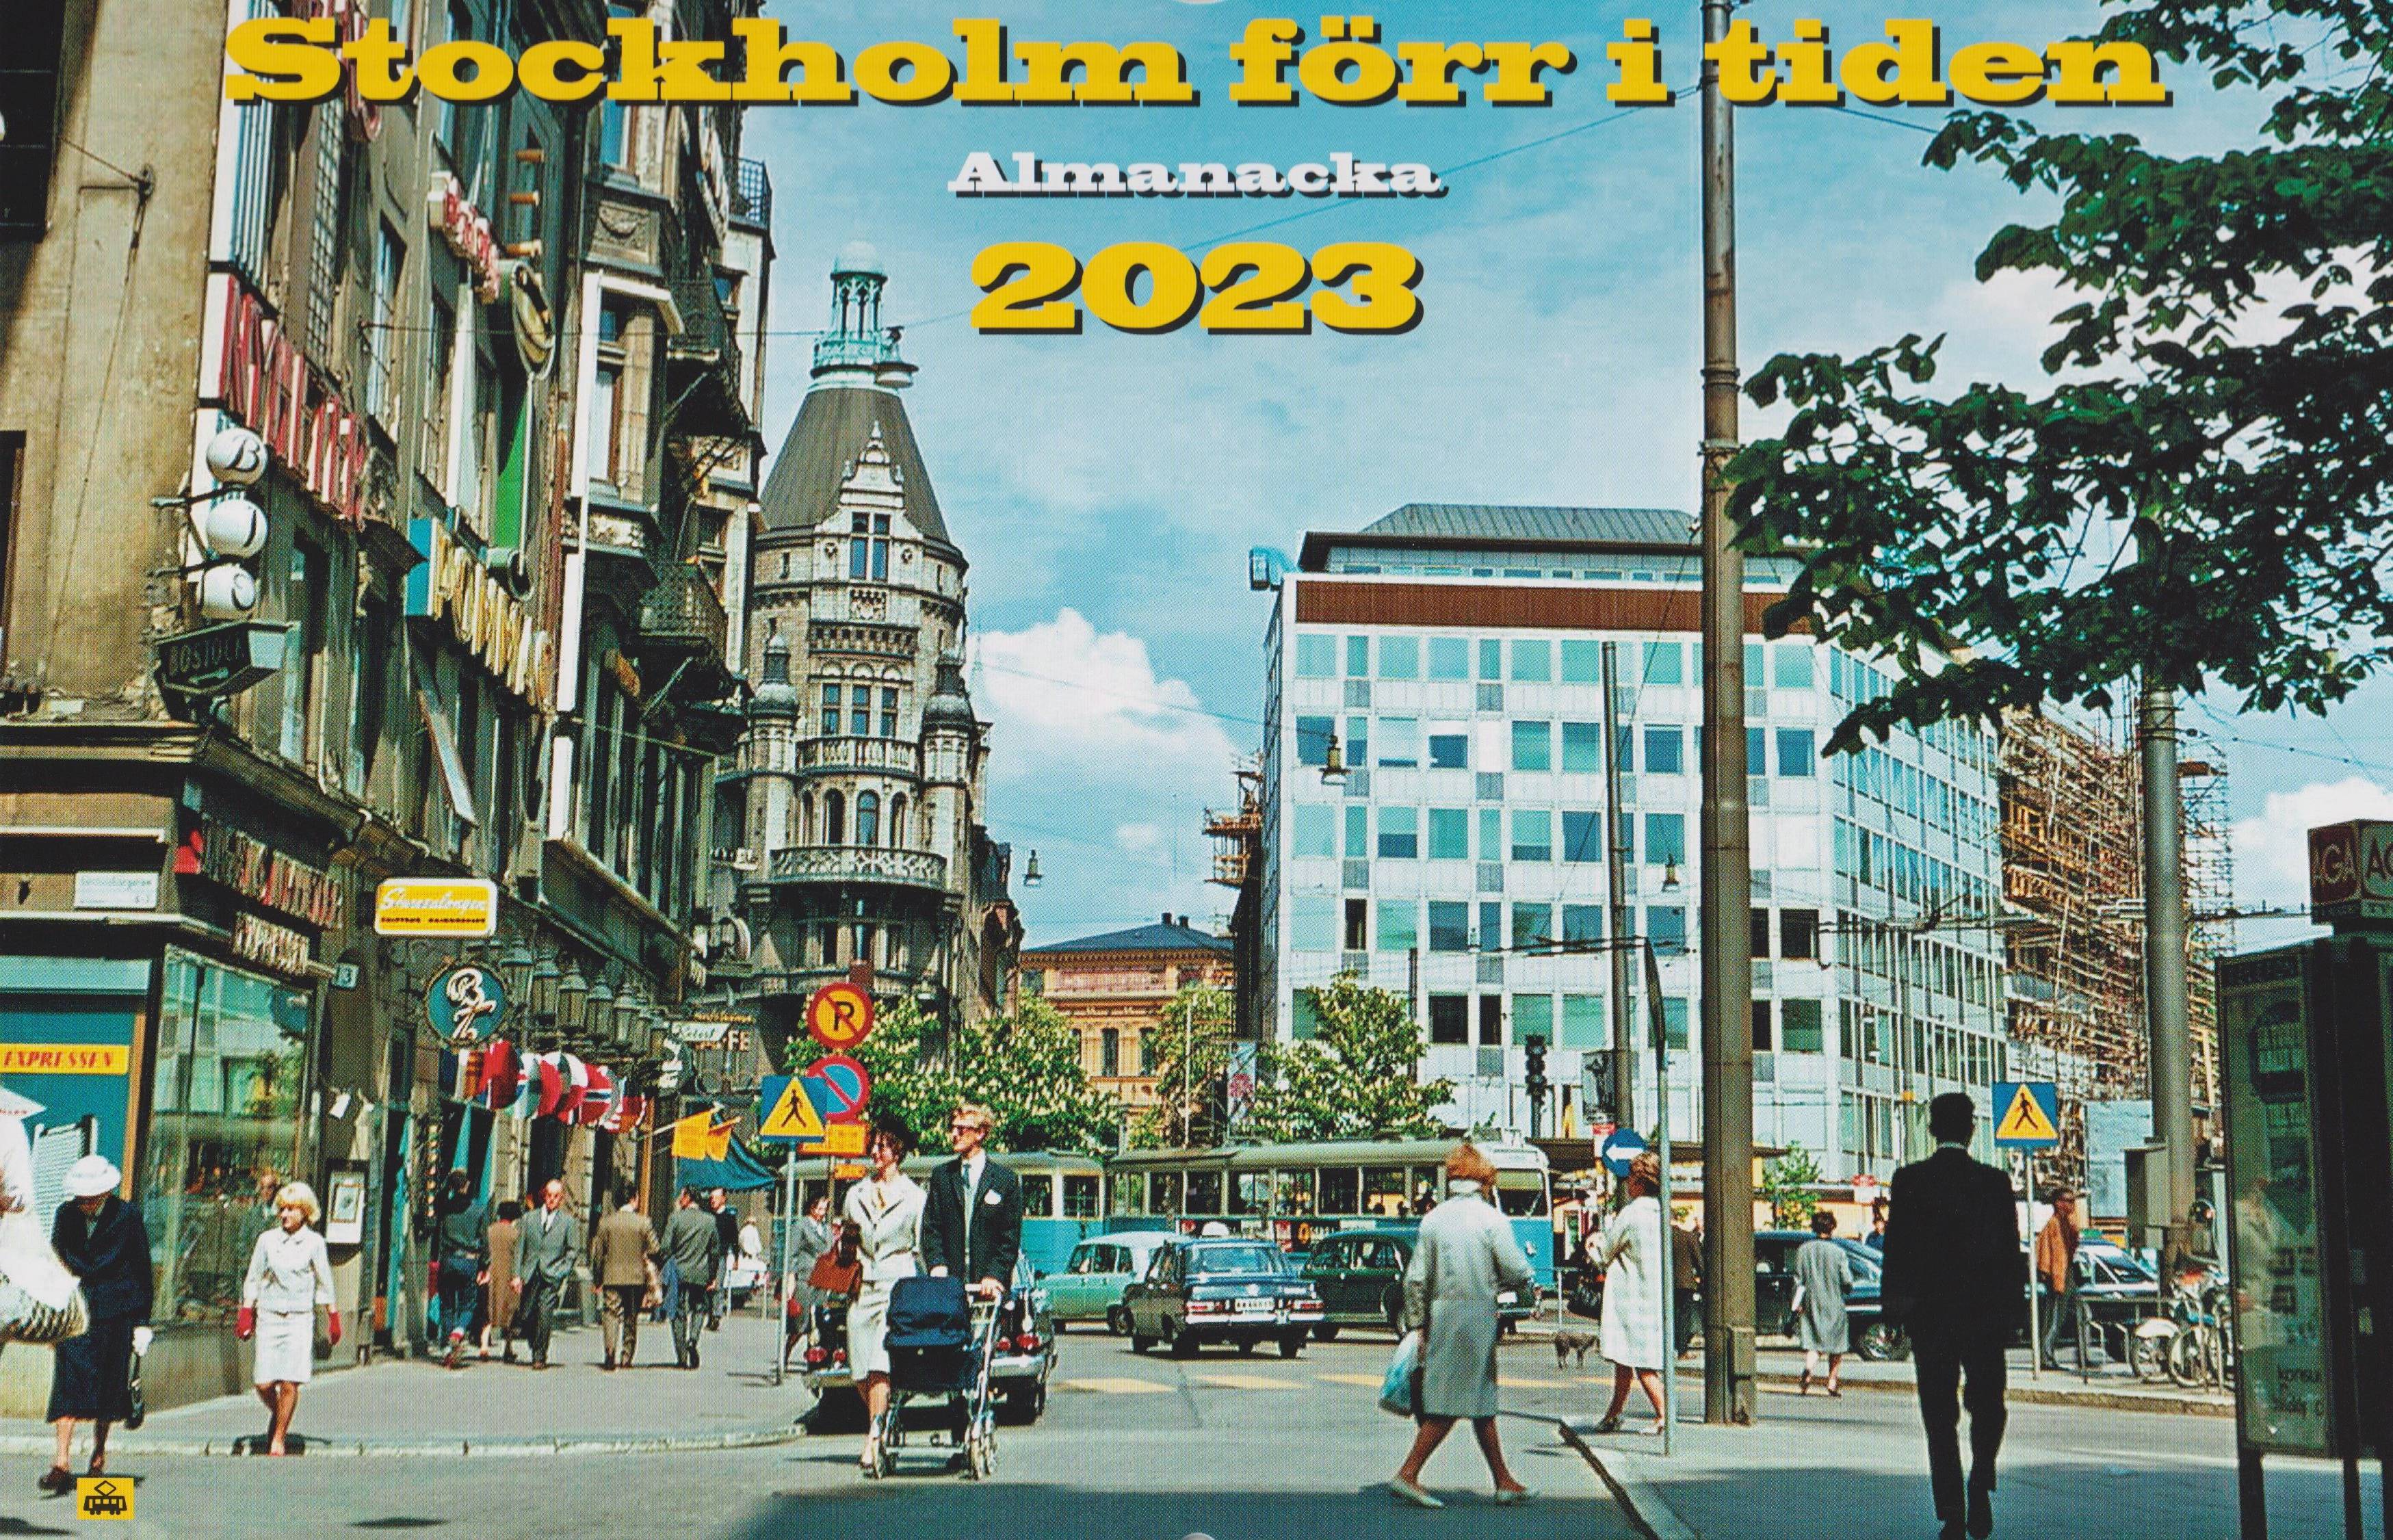 Stockholm förr i tiden 2023